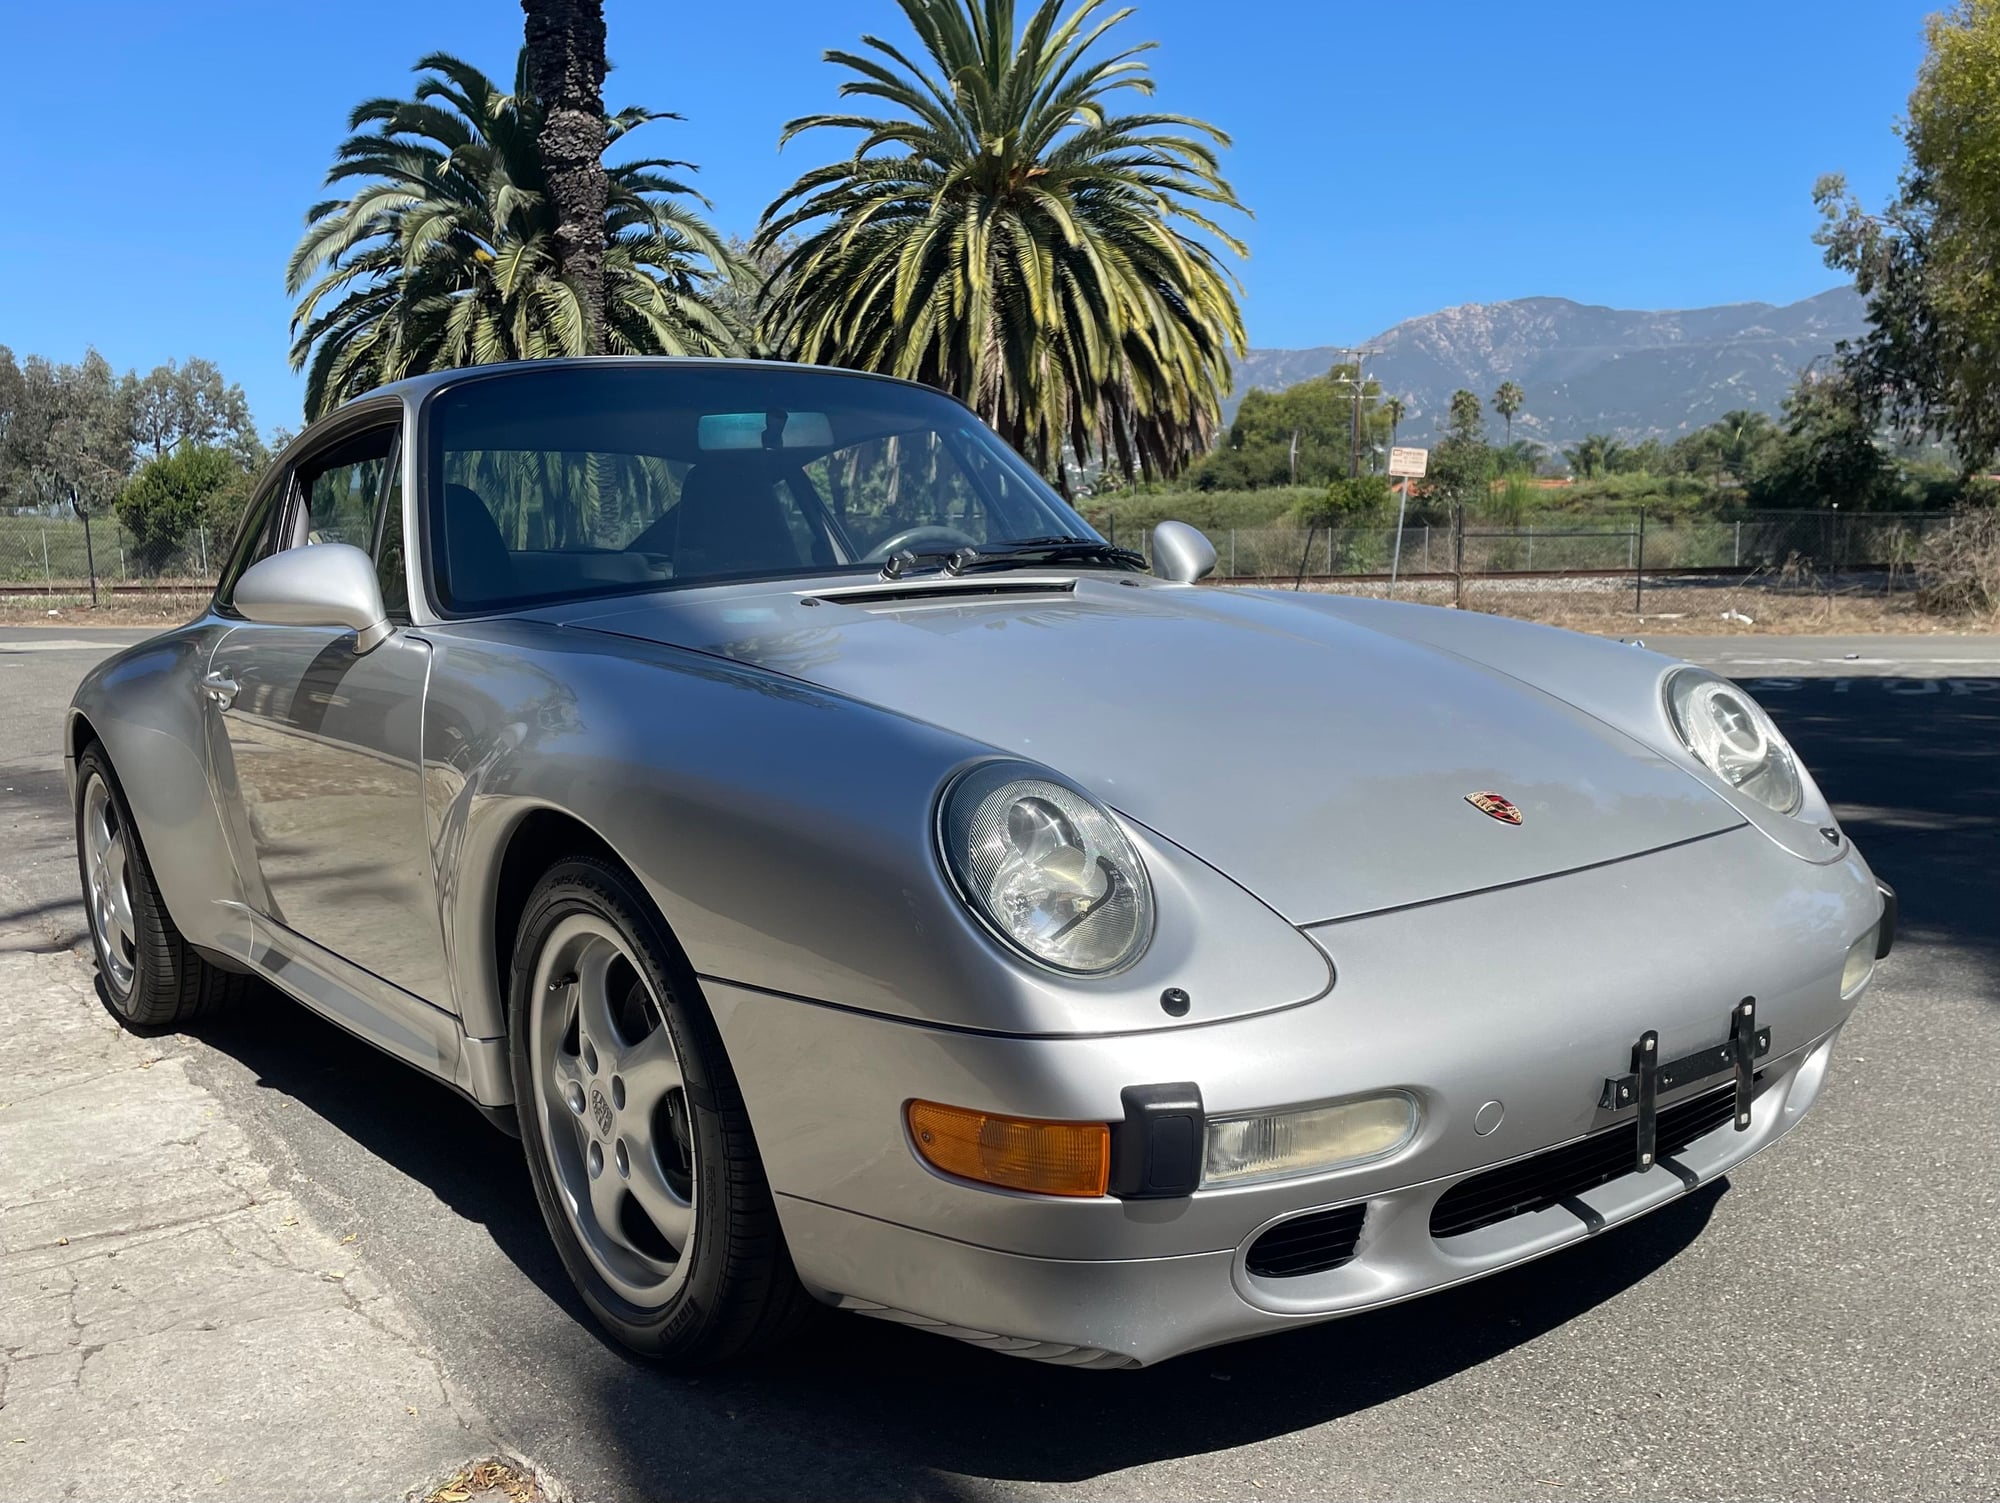 1997 Porsche 911 - 1997 Porsche 993 C2S - Used - VIN WP0AA2994VS322926 - 48,000 Miles - 6 cyl - 2WD - Manual - Coupe - Silver - Santa Barbara, CA 93103, United States